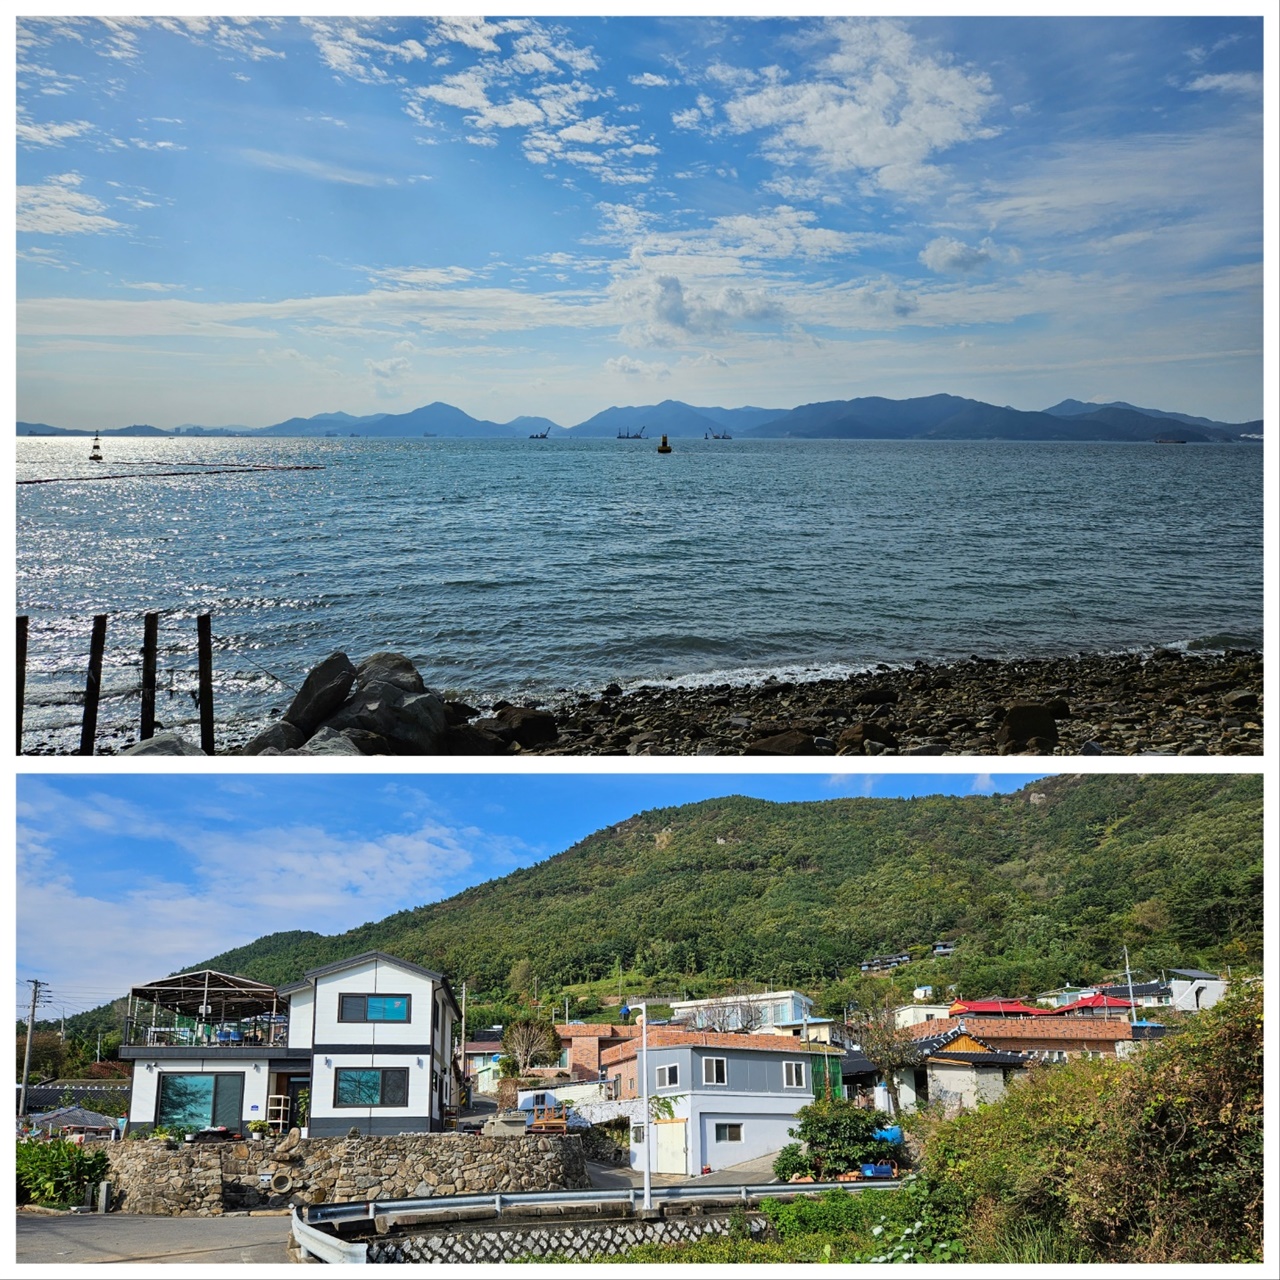 고향마을 앞의 바다 풍경(위), 친구가 사는 고향마을의 풍경(아래)